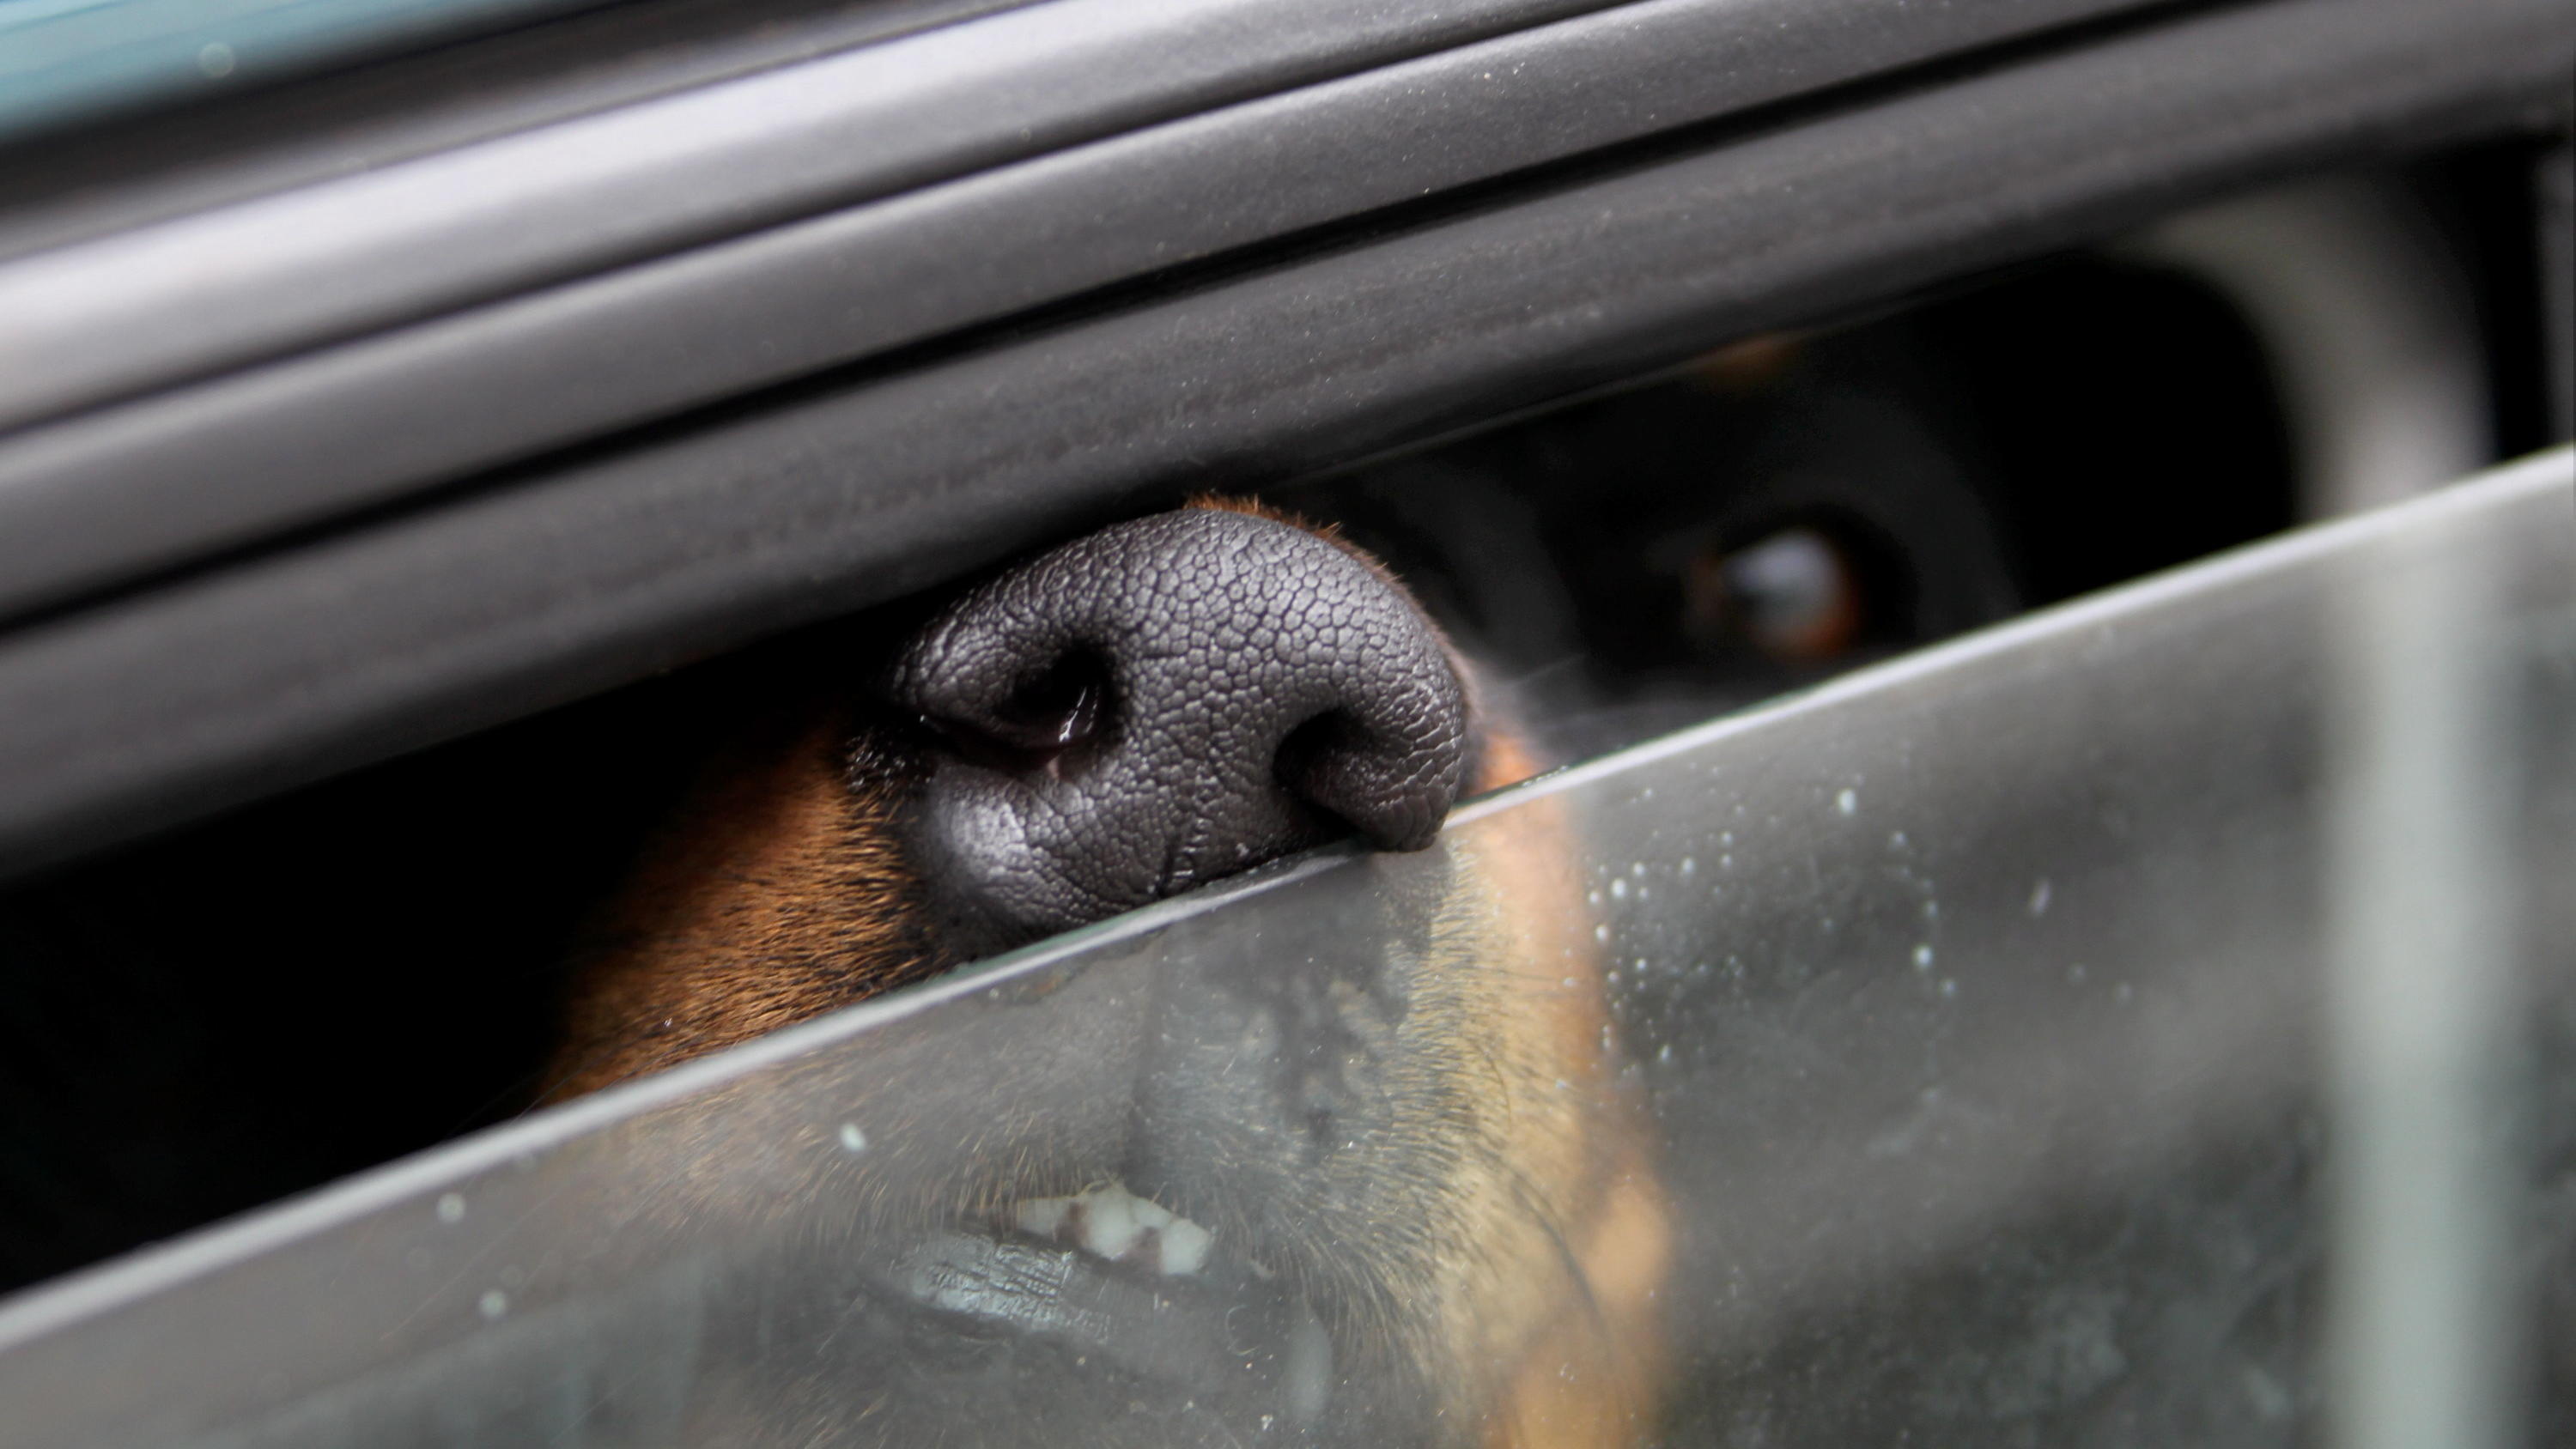 Wegen Hitze Polizei befreit Hund aus verschlossenem Auto Anzeige für